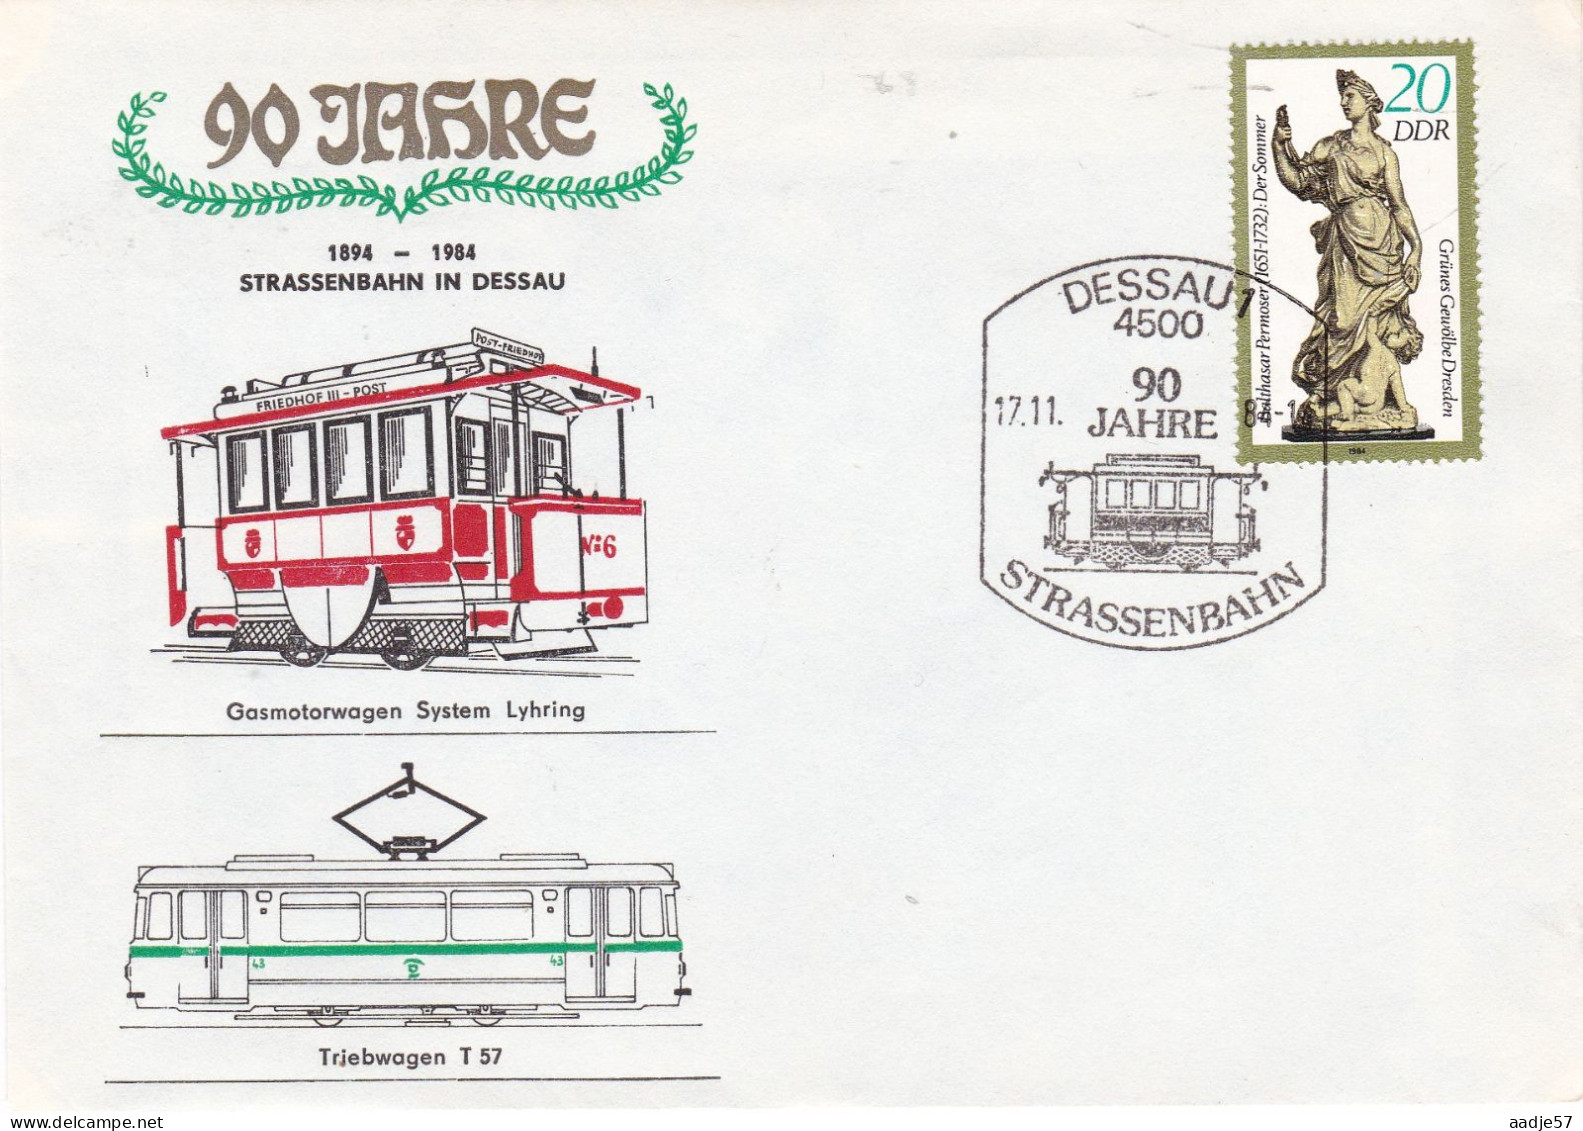 Germany DDR 1984 90 Jahre Strassenbahn In Dessau  17-11-1984 - Strassenbahnen